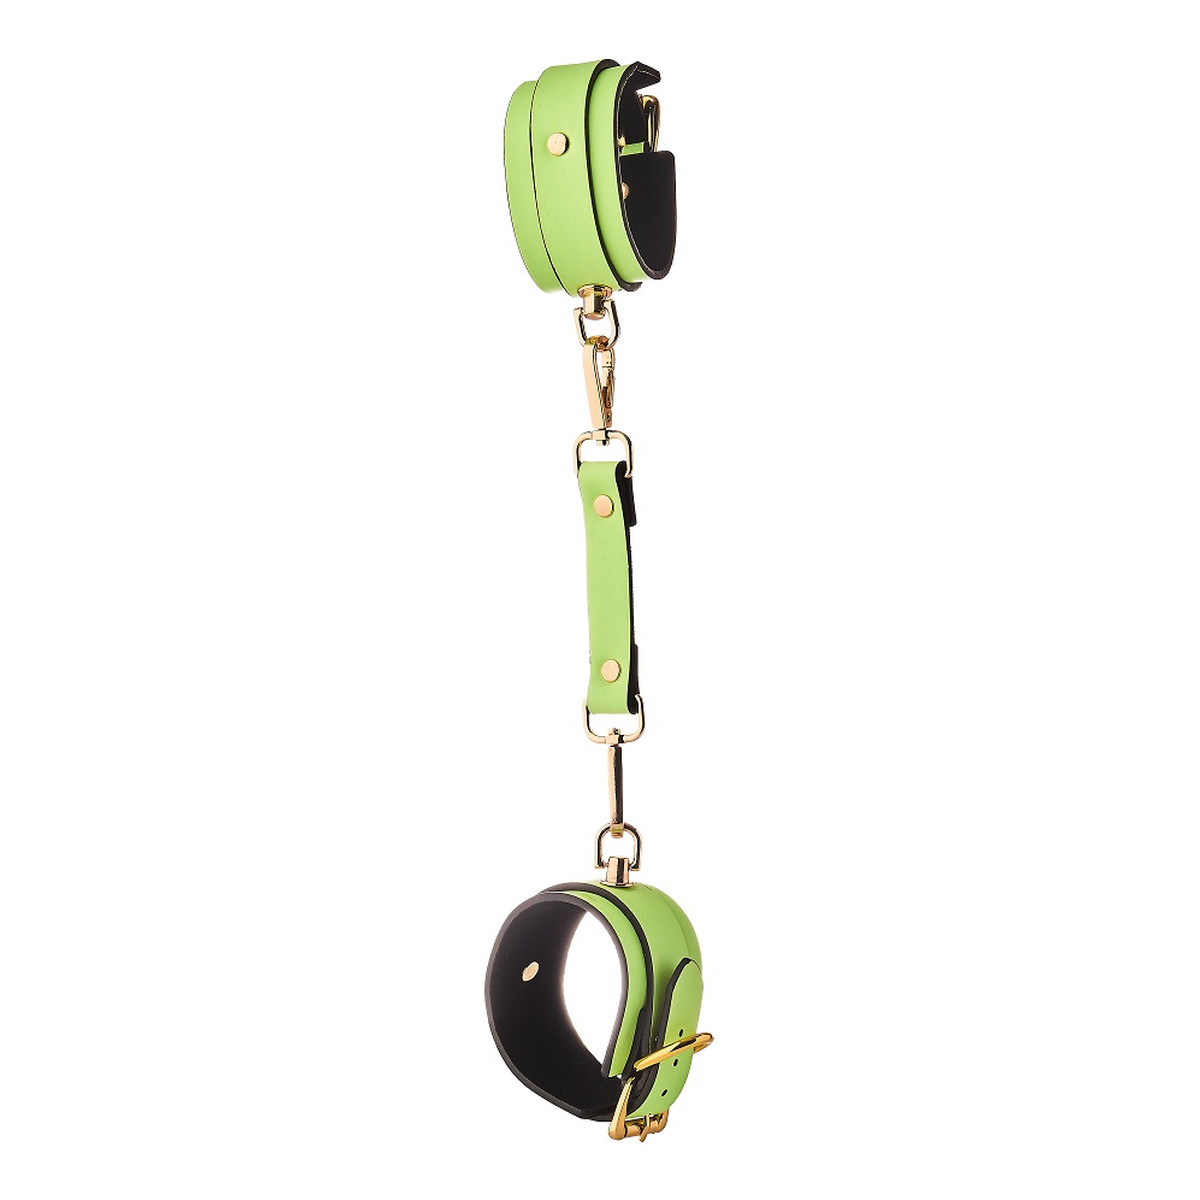 Dream Toys Radiant handcuff kajdanki świecące w ciemności green